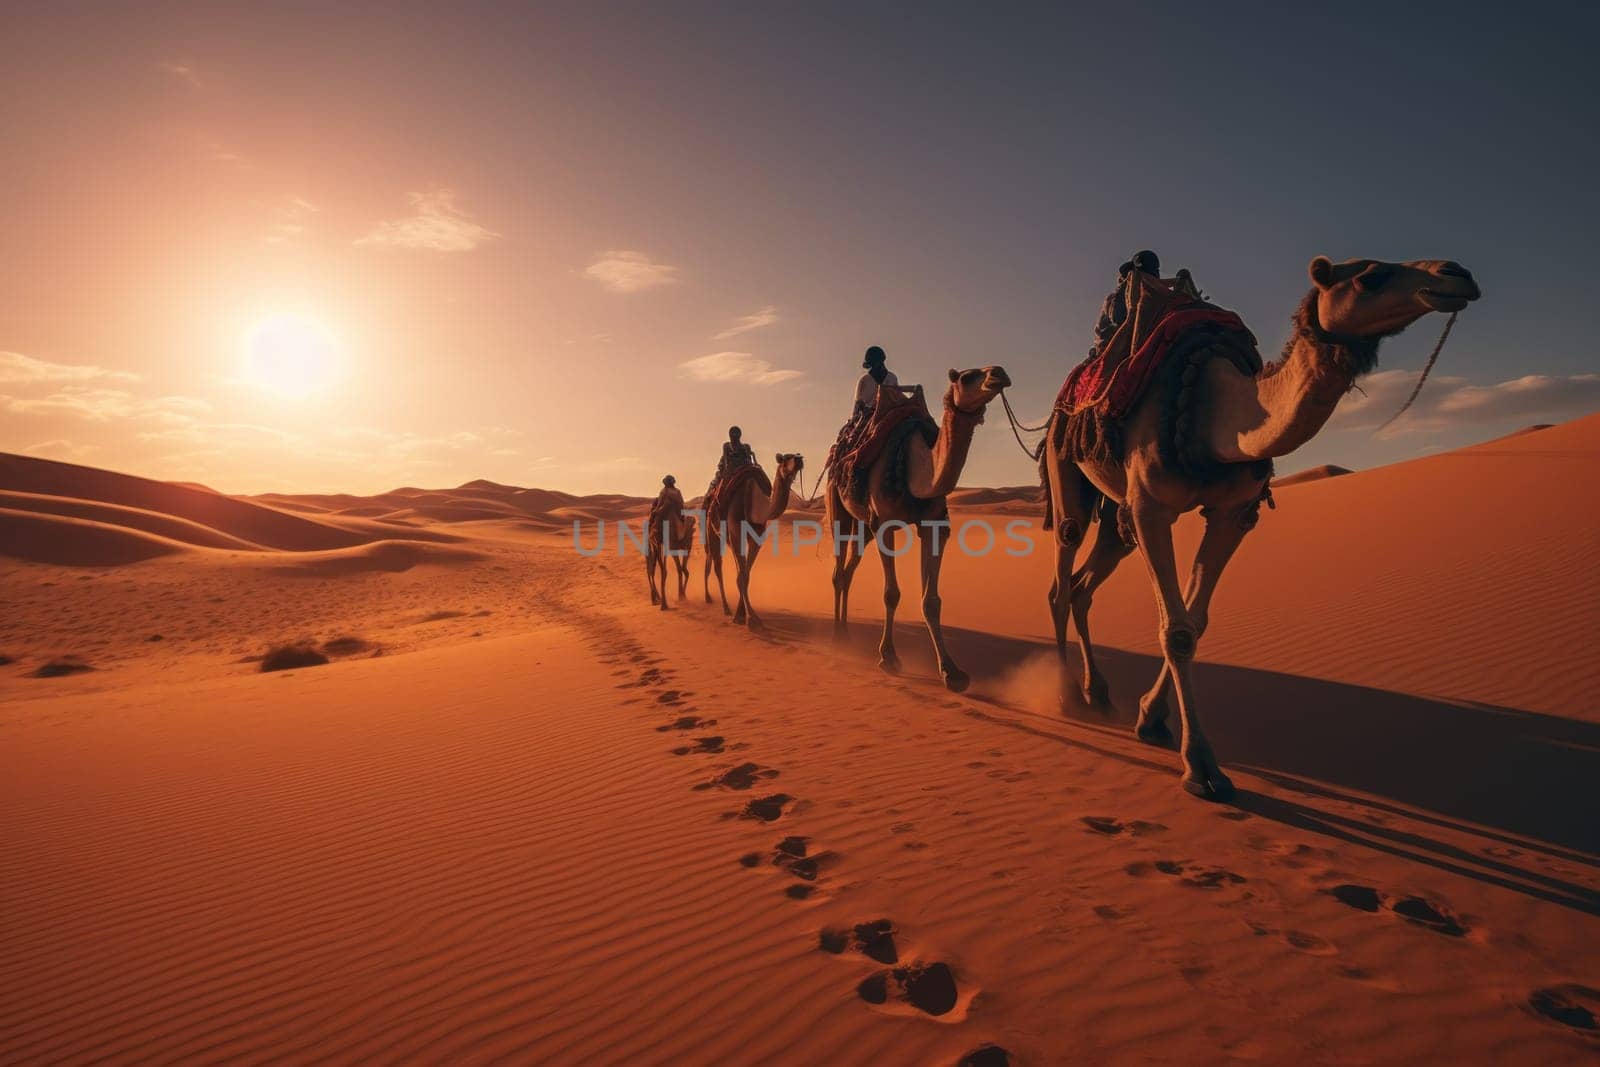 Herd of camel riders crossing the great desert.